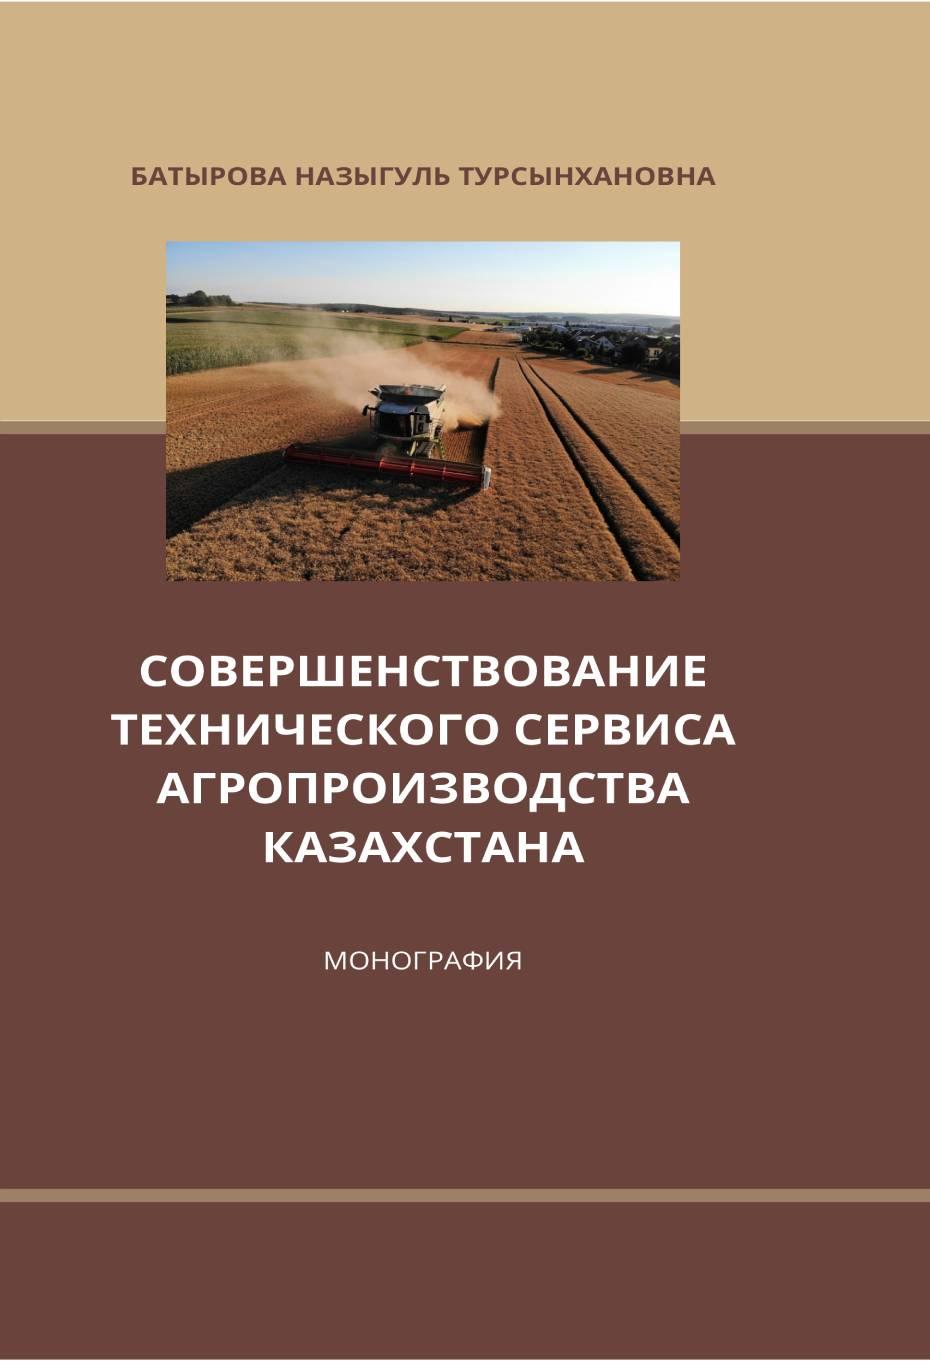 Совершенствование технического сервиса агропроизводства Казахстана, Монография.